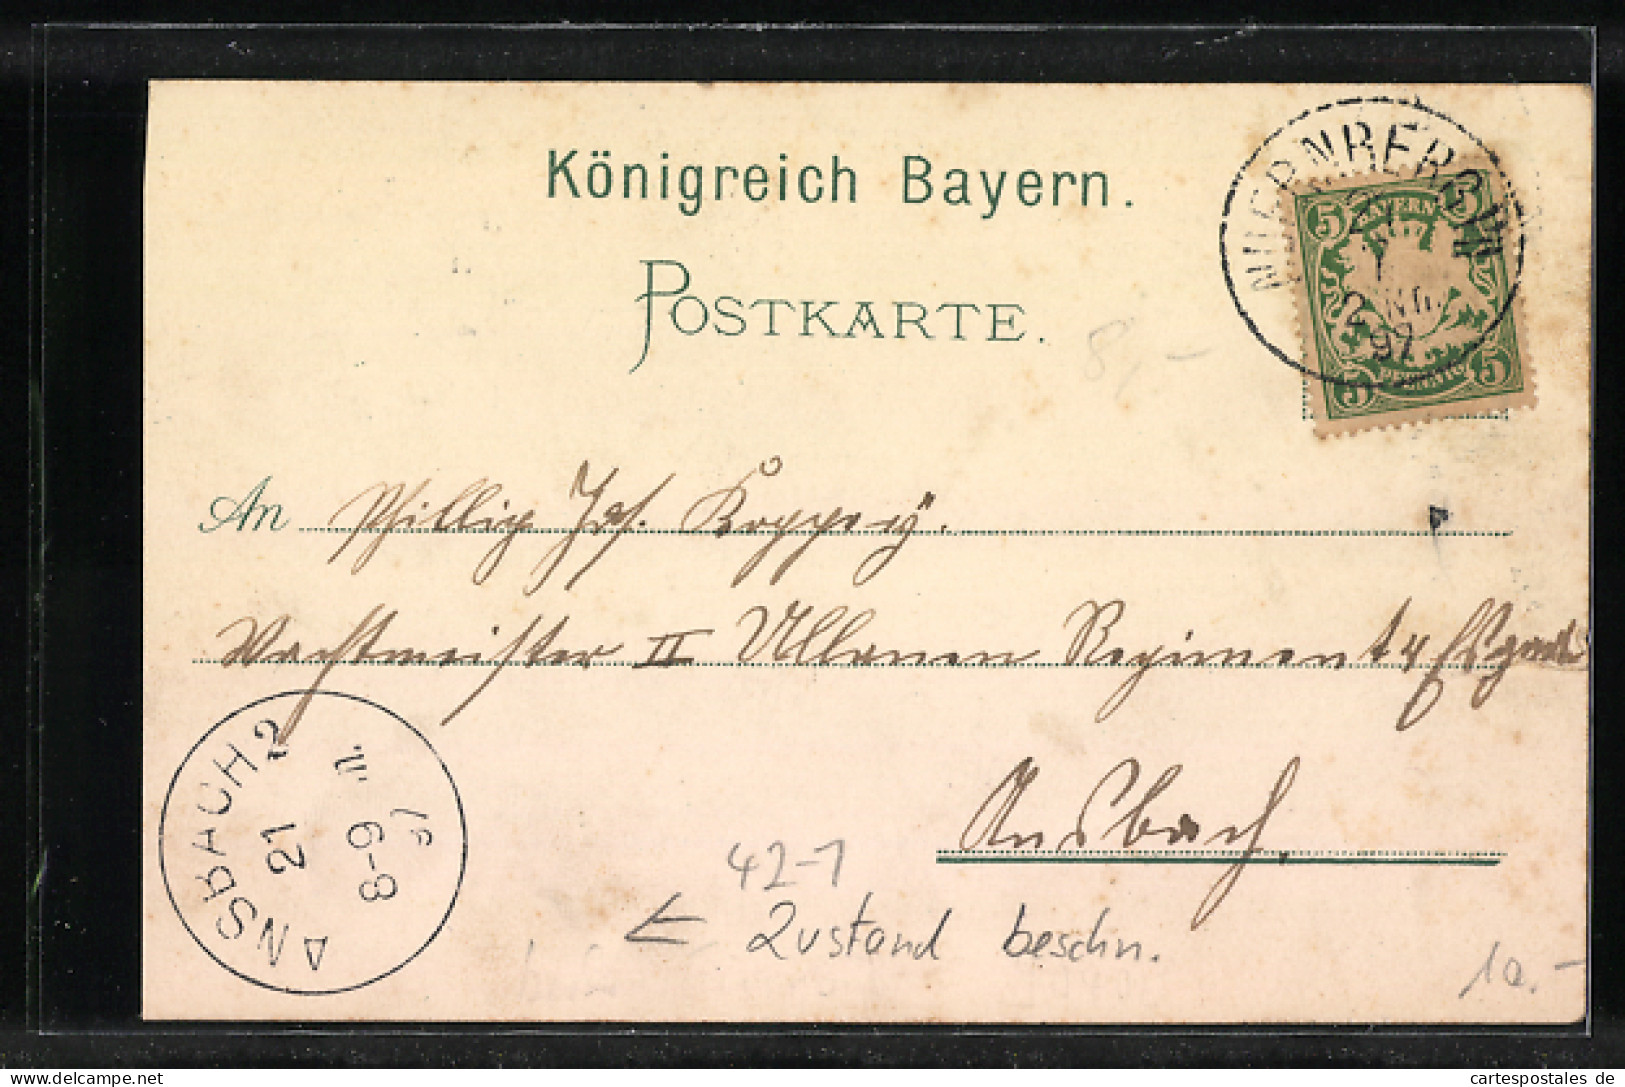 Lithographie Nürnberg, XII. Deutsches Bundesschiessen 1897, Teilansicht, Schütze Mit Frau In Tracht  - Chasse